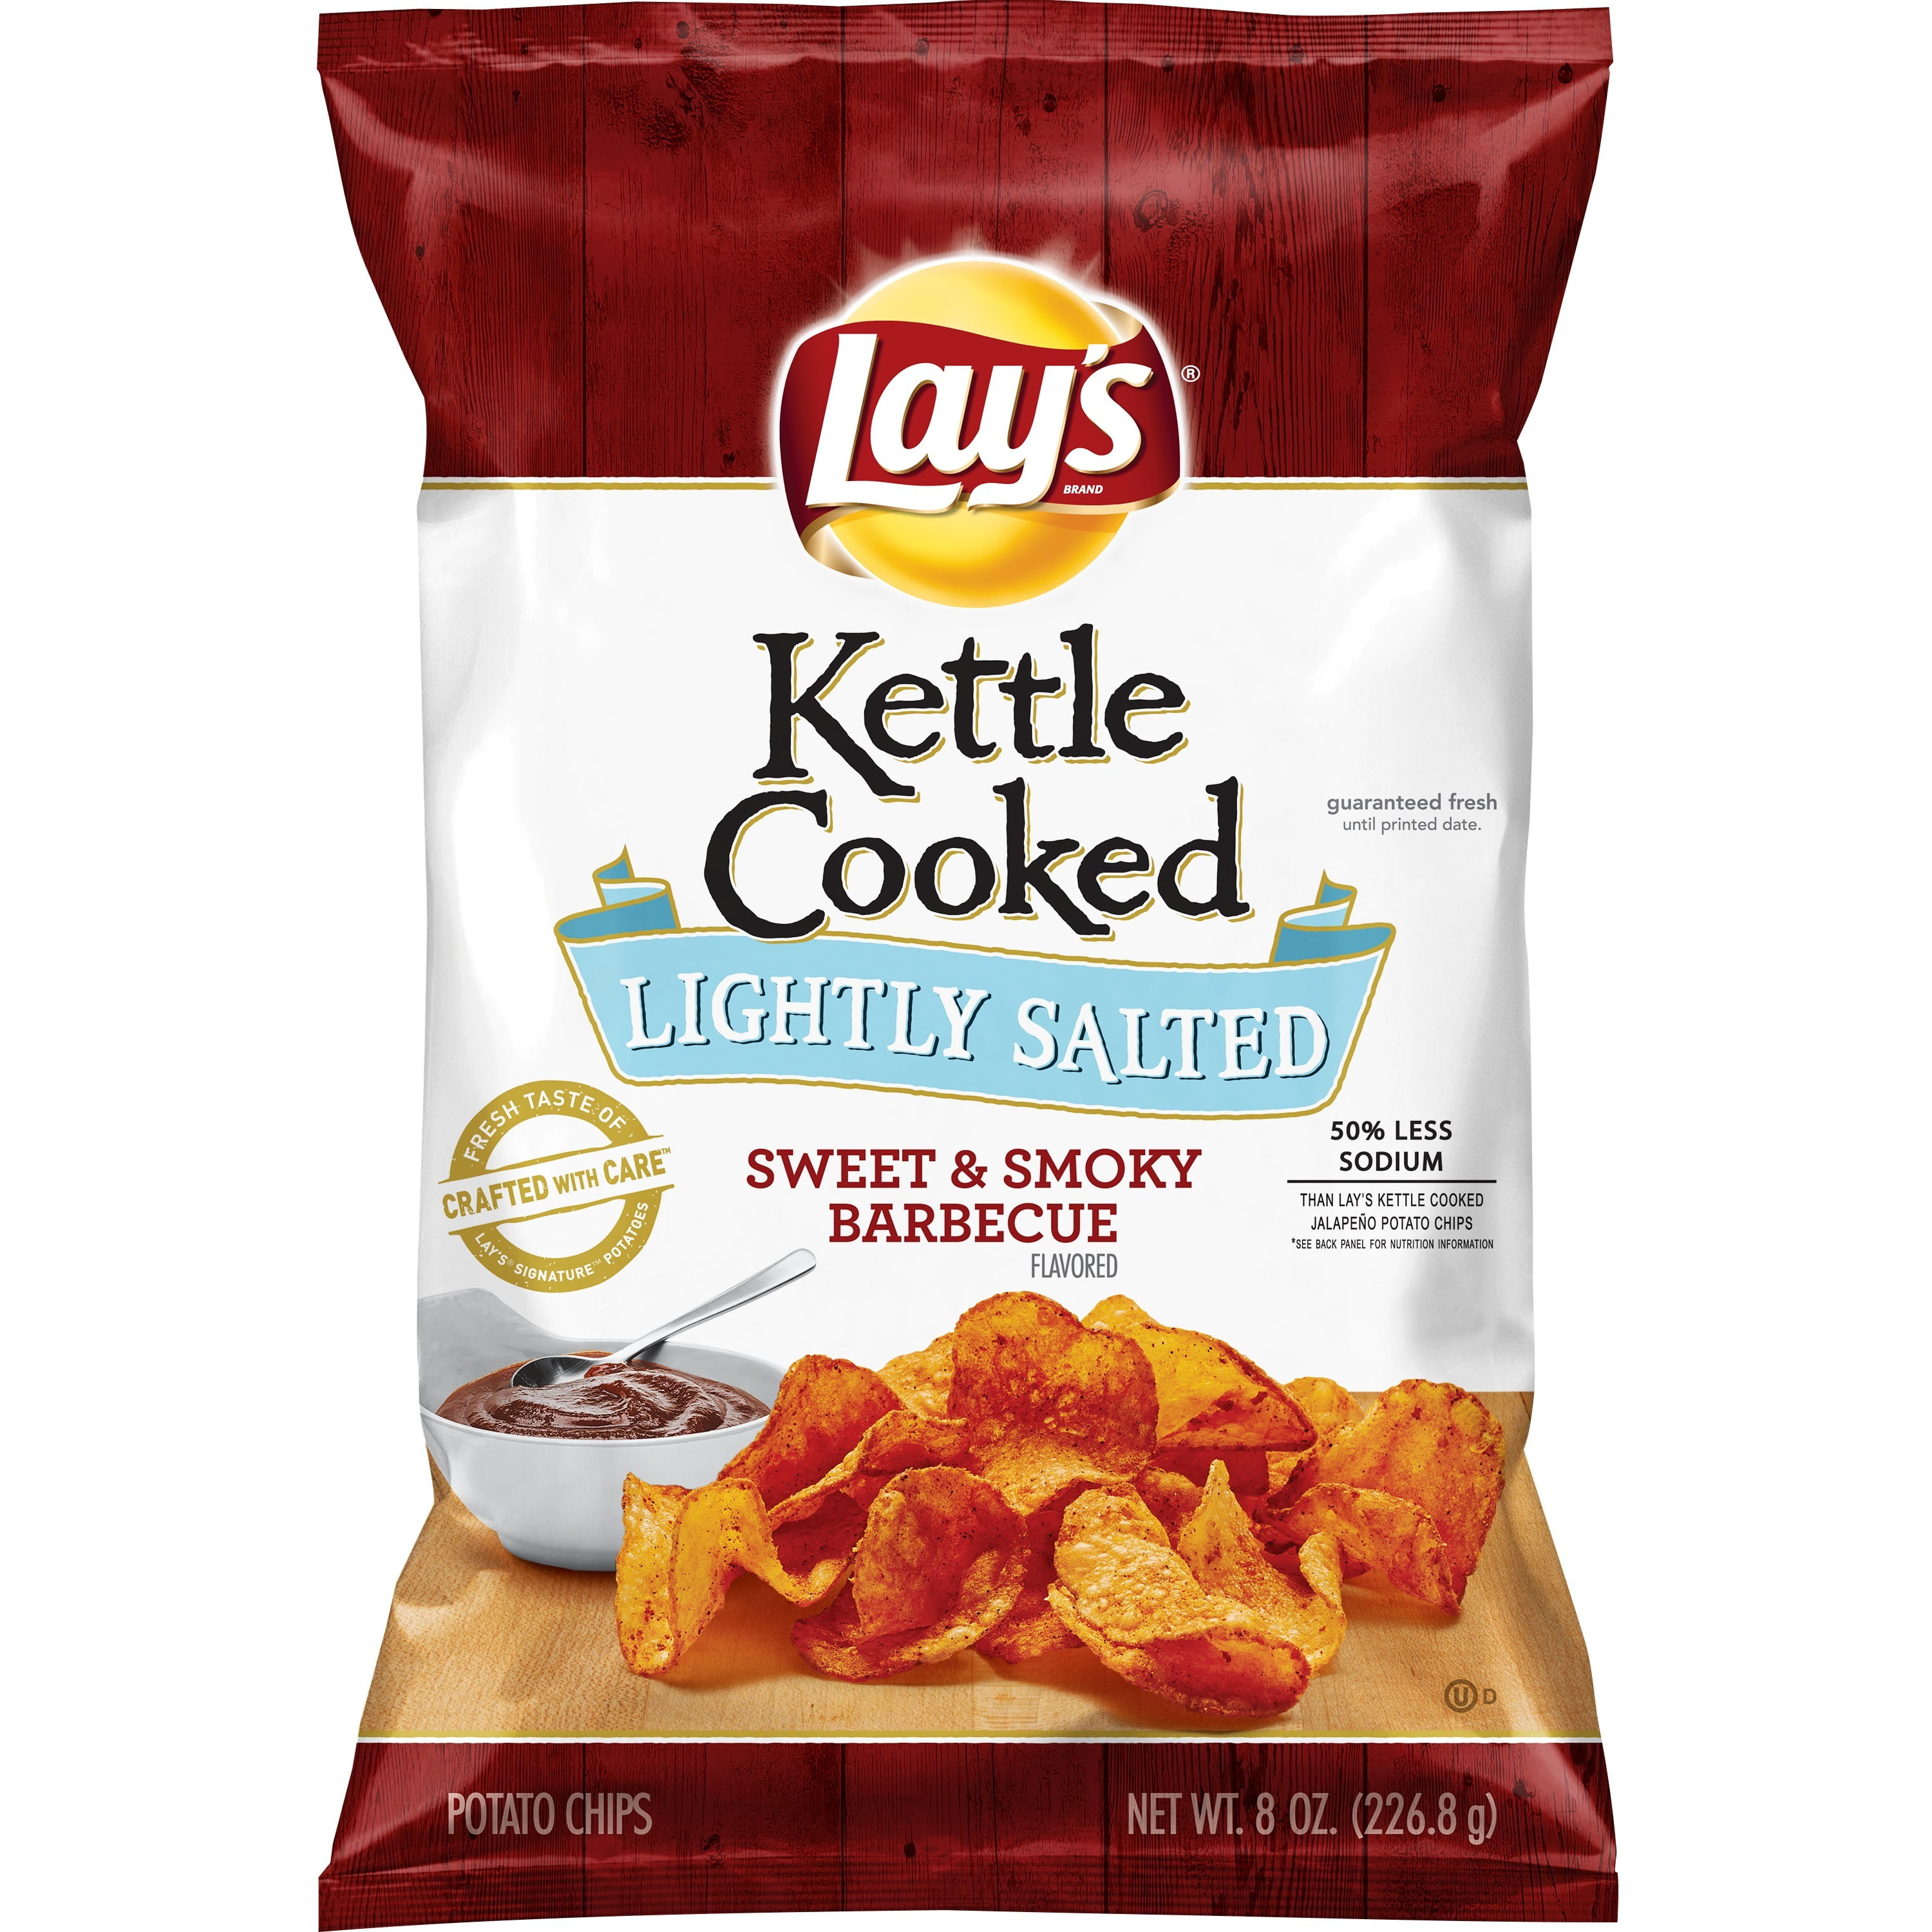 Kettle Brand Potato Chips, Avocado Oil Chili Lime Kettle Chips, 4.2 oz